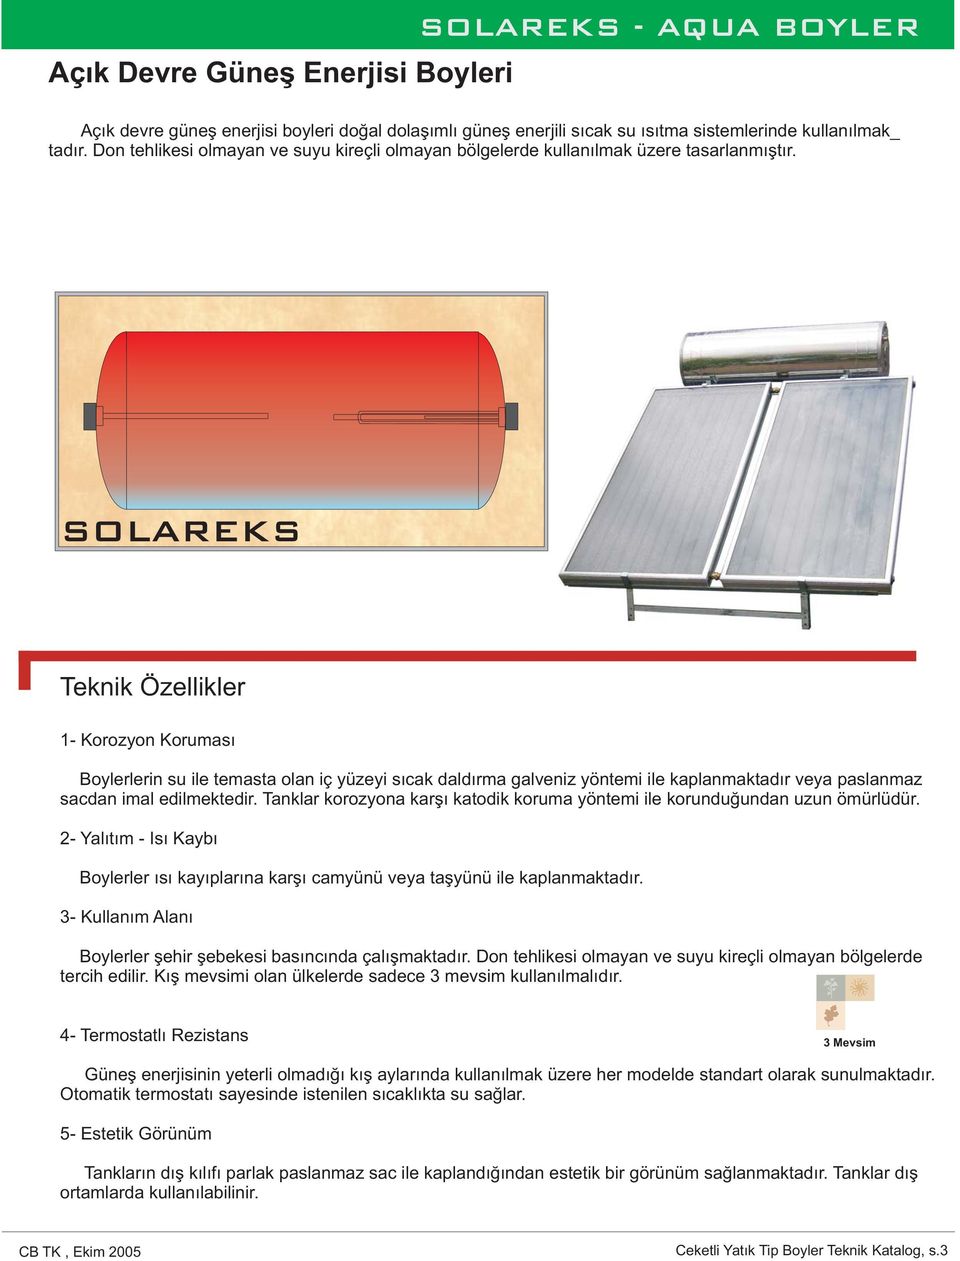 SOLAREKS Teknik Özellikler 1- Boylerlerin su ile temasta olan iç yüzeyi sıcak daldırma galveniz yöntemi ile kaplanmaktadır veya paslanmaz sacdan imal edilmektedir.